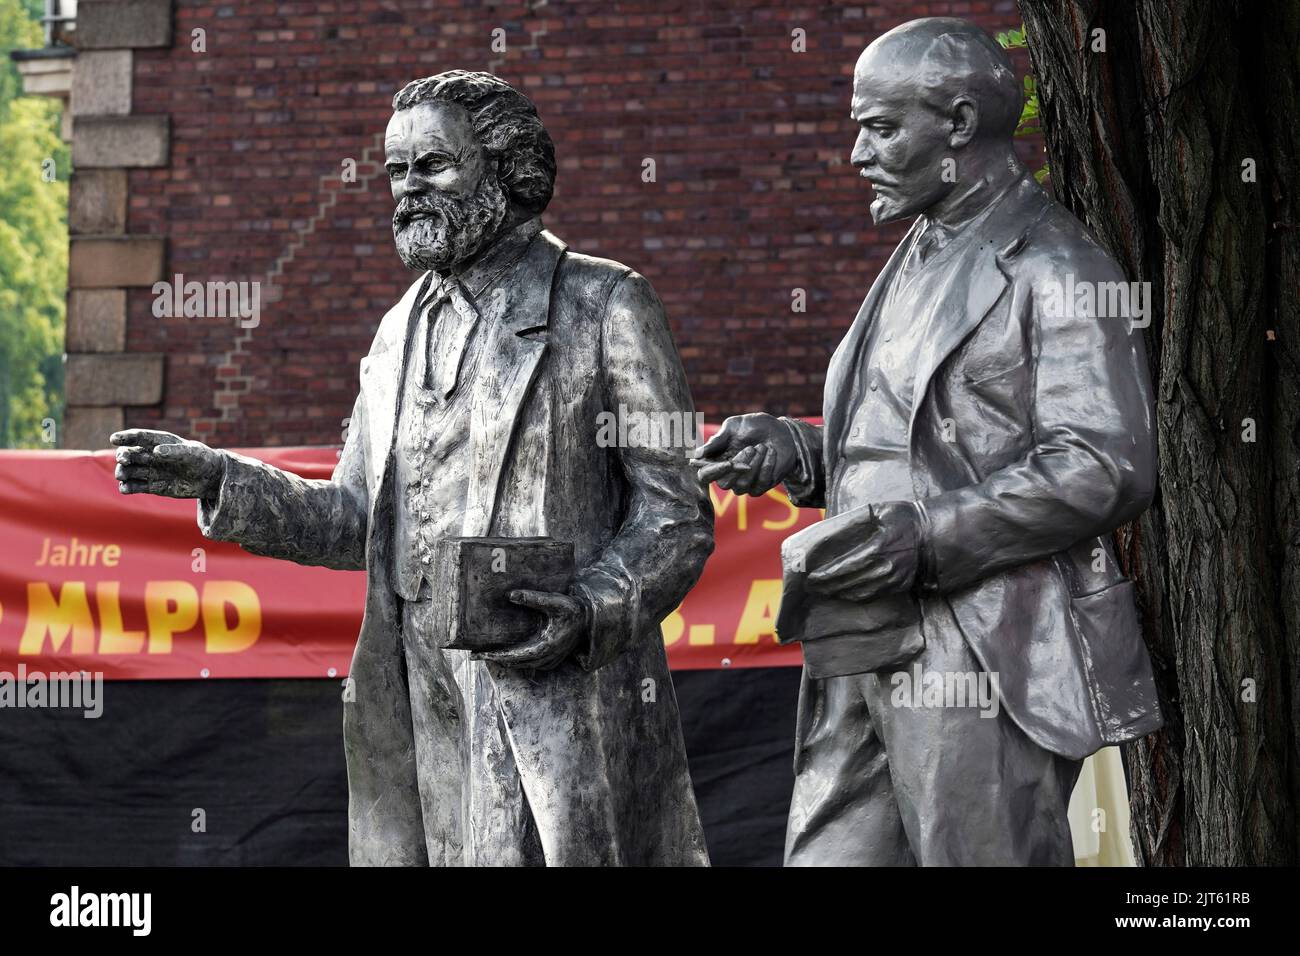 El partido comunista MLPD (Partido Marxista-Leninista de Alemania) dio a conocer una estatua del teórico social Karl Marx (1818-1883) el 27 de agosto de 2022 (proth Left). La estatua de 2,11 metros hecha de aluminio fundido se encuentra justo al lado del monumento de Lenin (derecha), que el partido erigió frente a su cuartel general en Gelsenkirchen en 2020. Gelsenkirchen, Alemania, 28 de agosto de 2022 Foto de stock